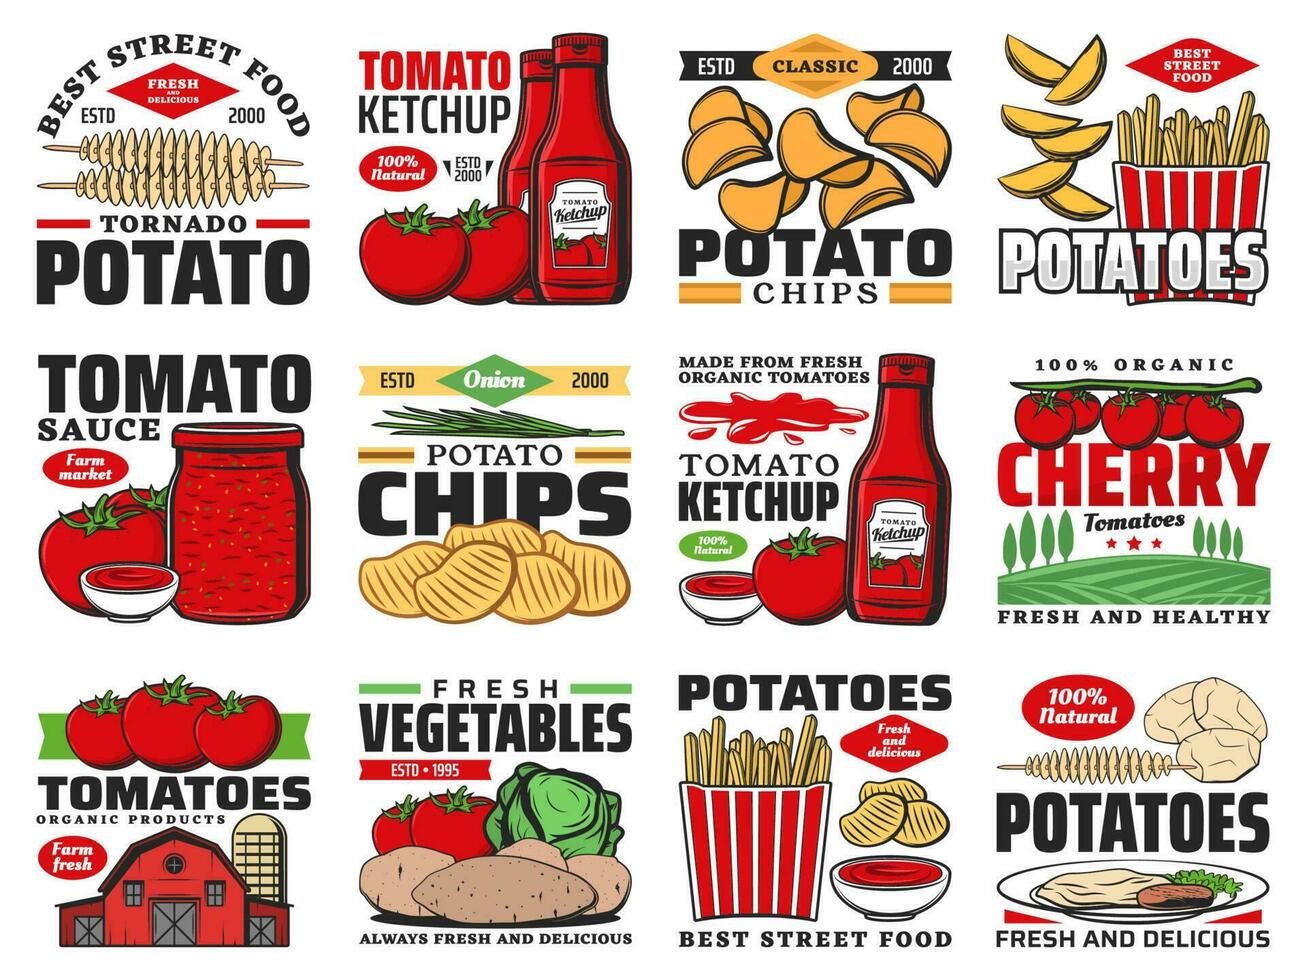 tomat och potatis mat Produkter, ketchup och pommes frites vektor